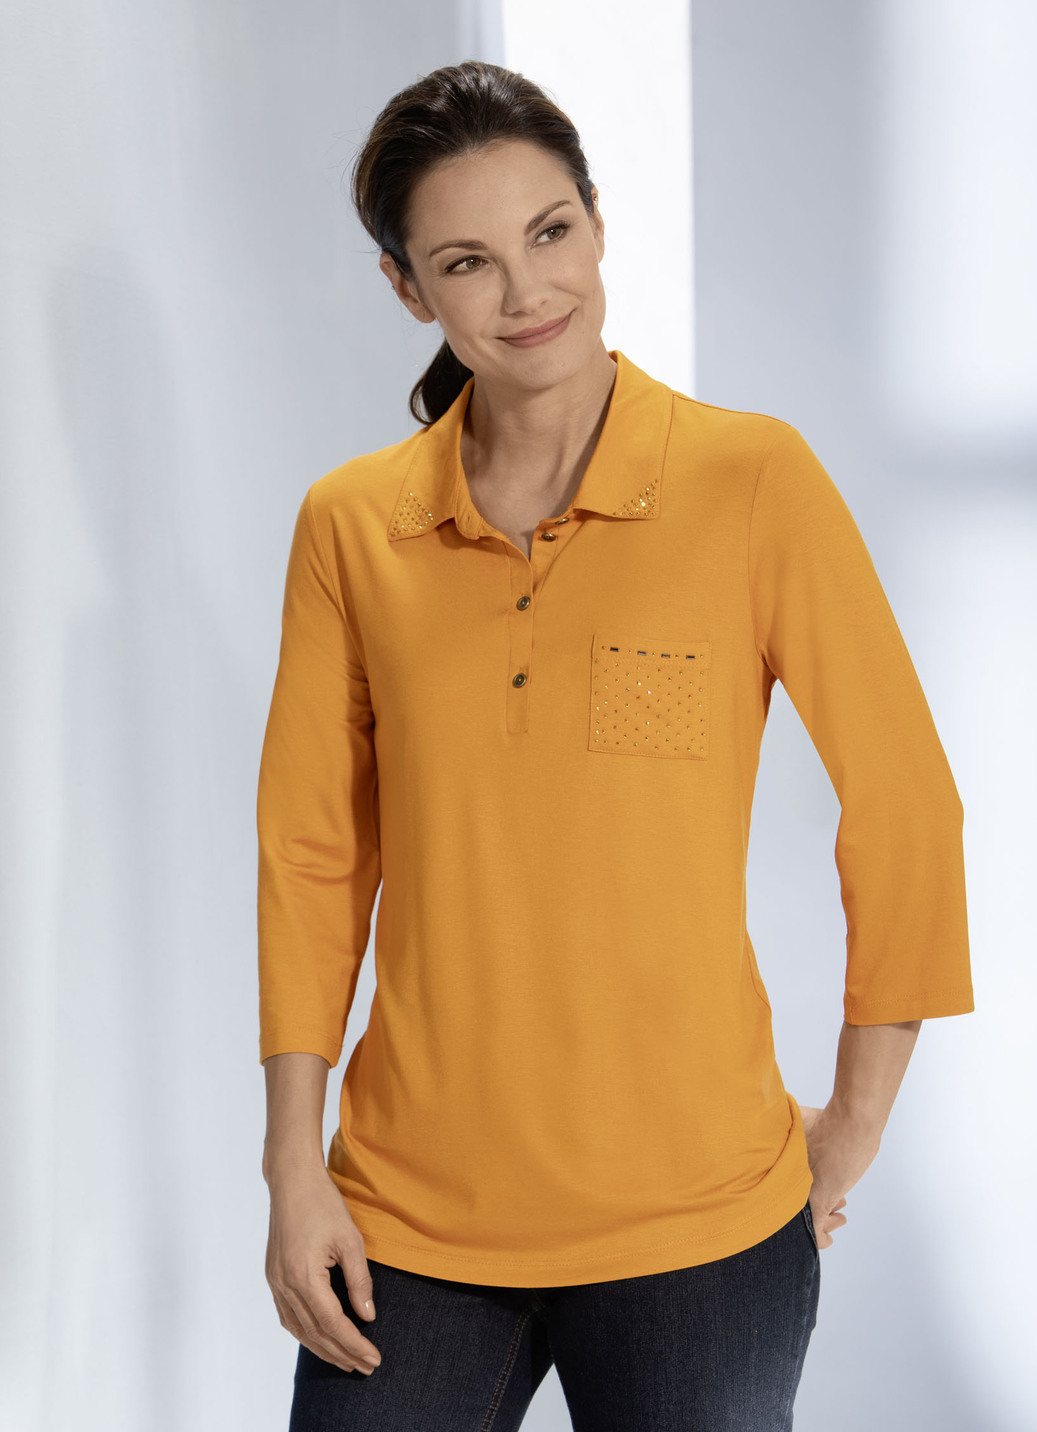 Poloshirt mit Strasszier am Polokragen in 3 Farben, Mandarine, Größe 40 von BADER